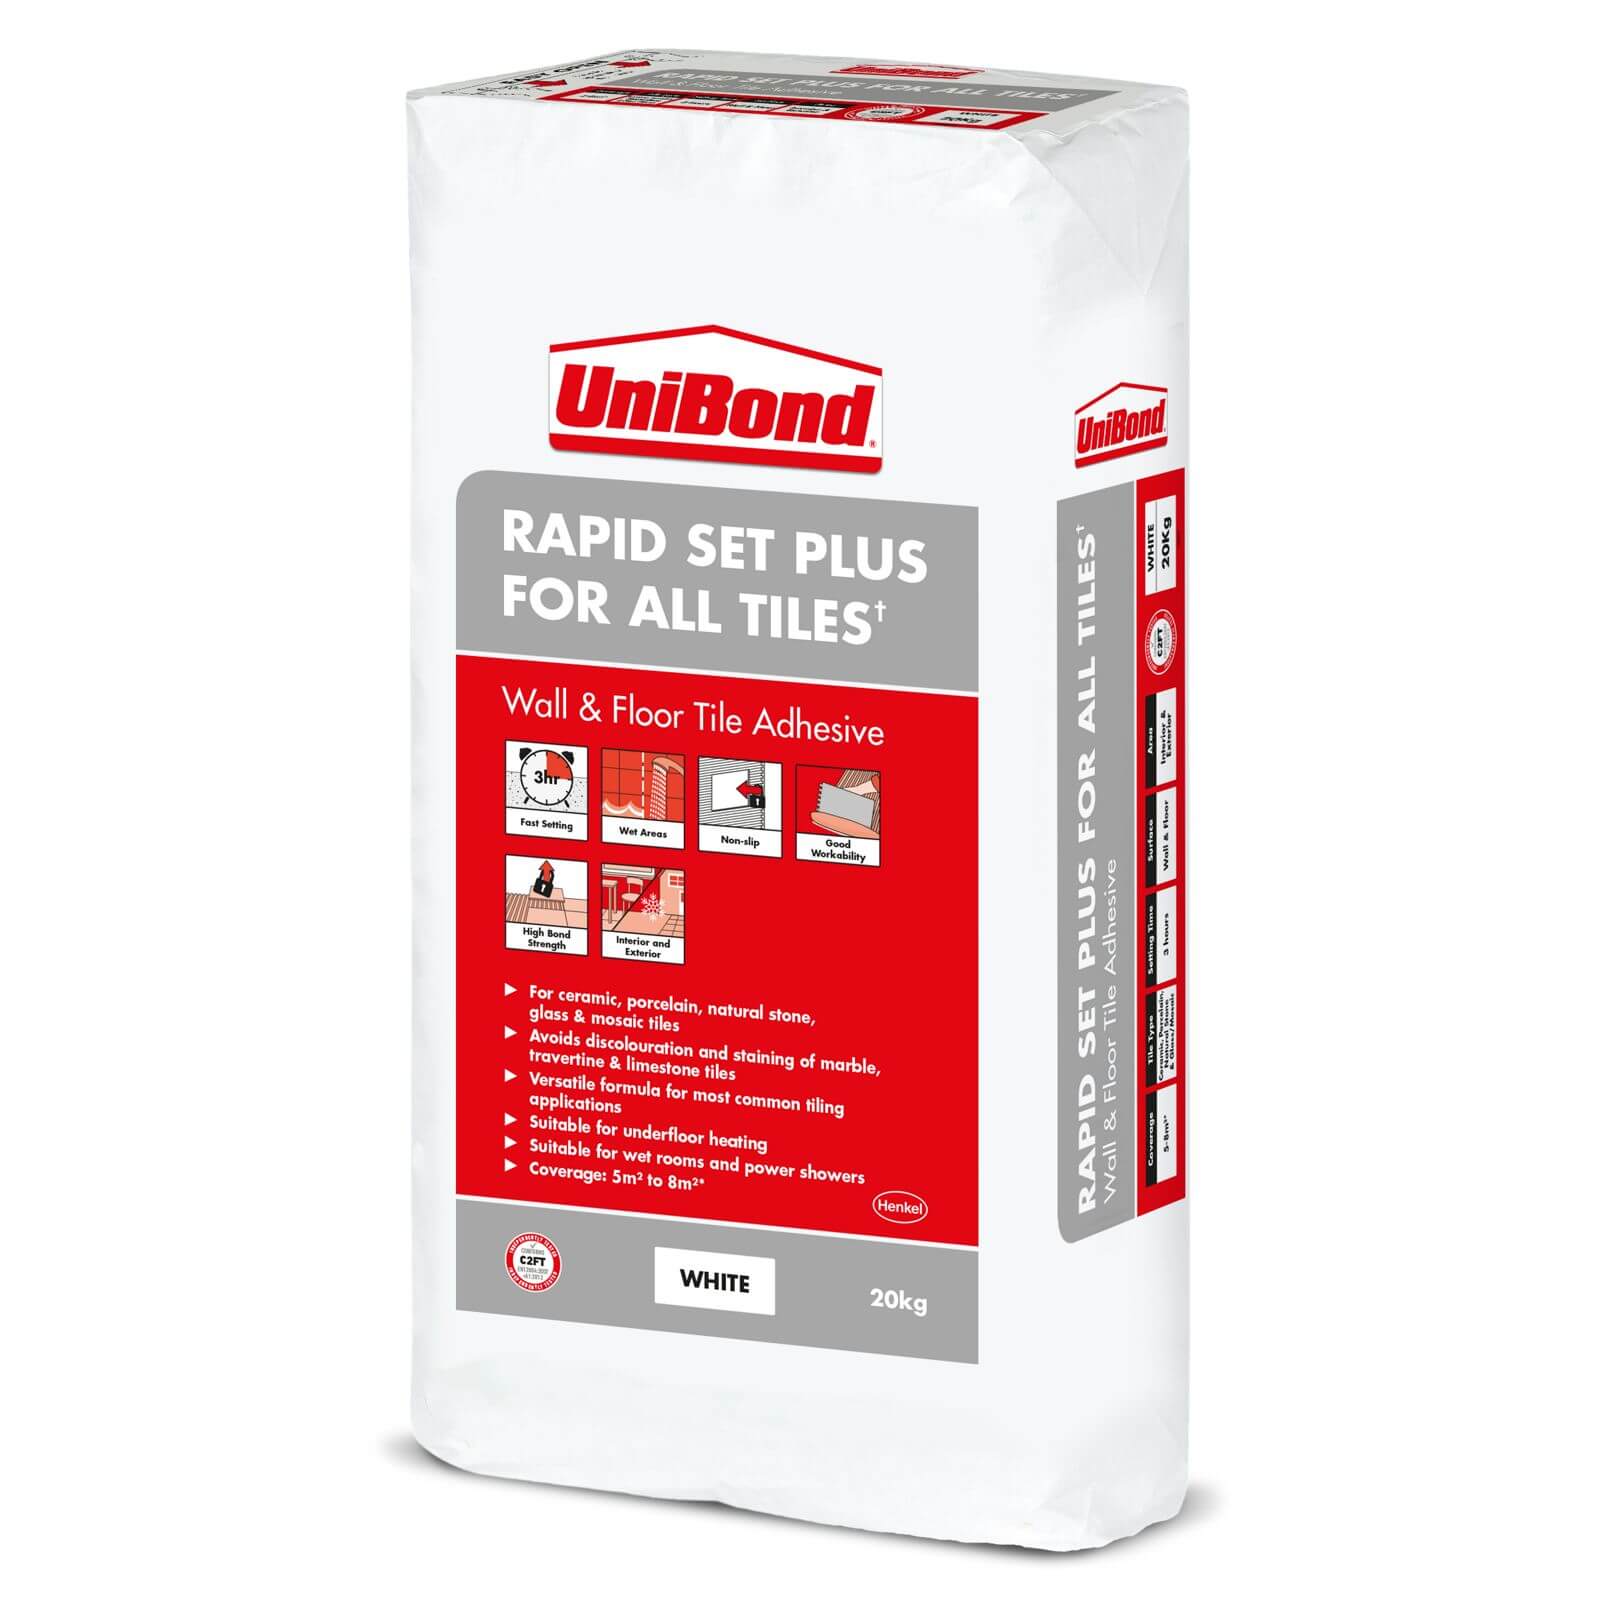 UniBond Rapid Set Plus for All Tiles 20kg